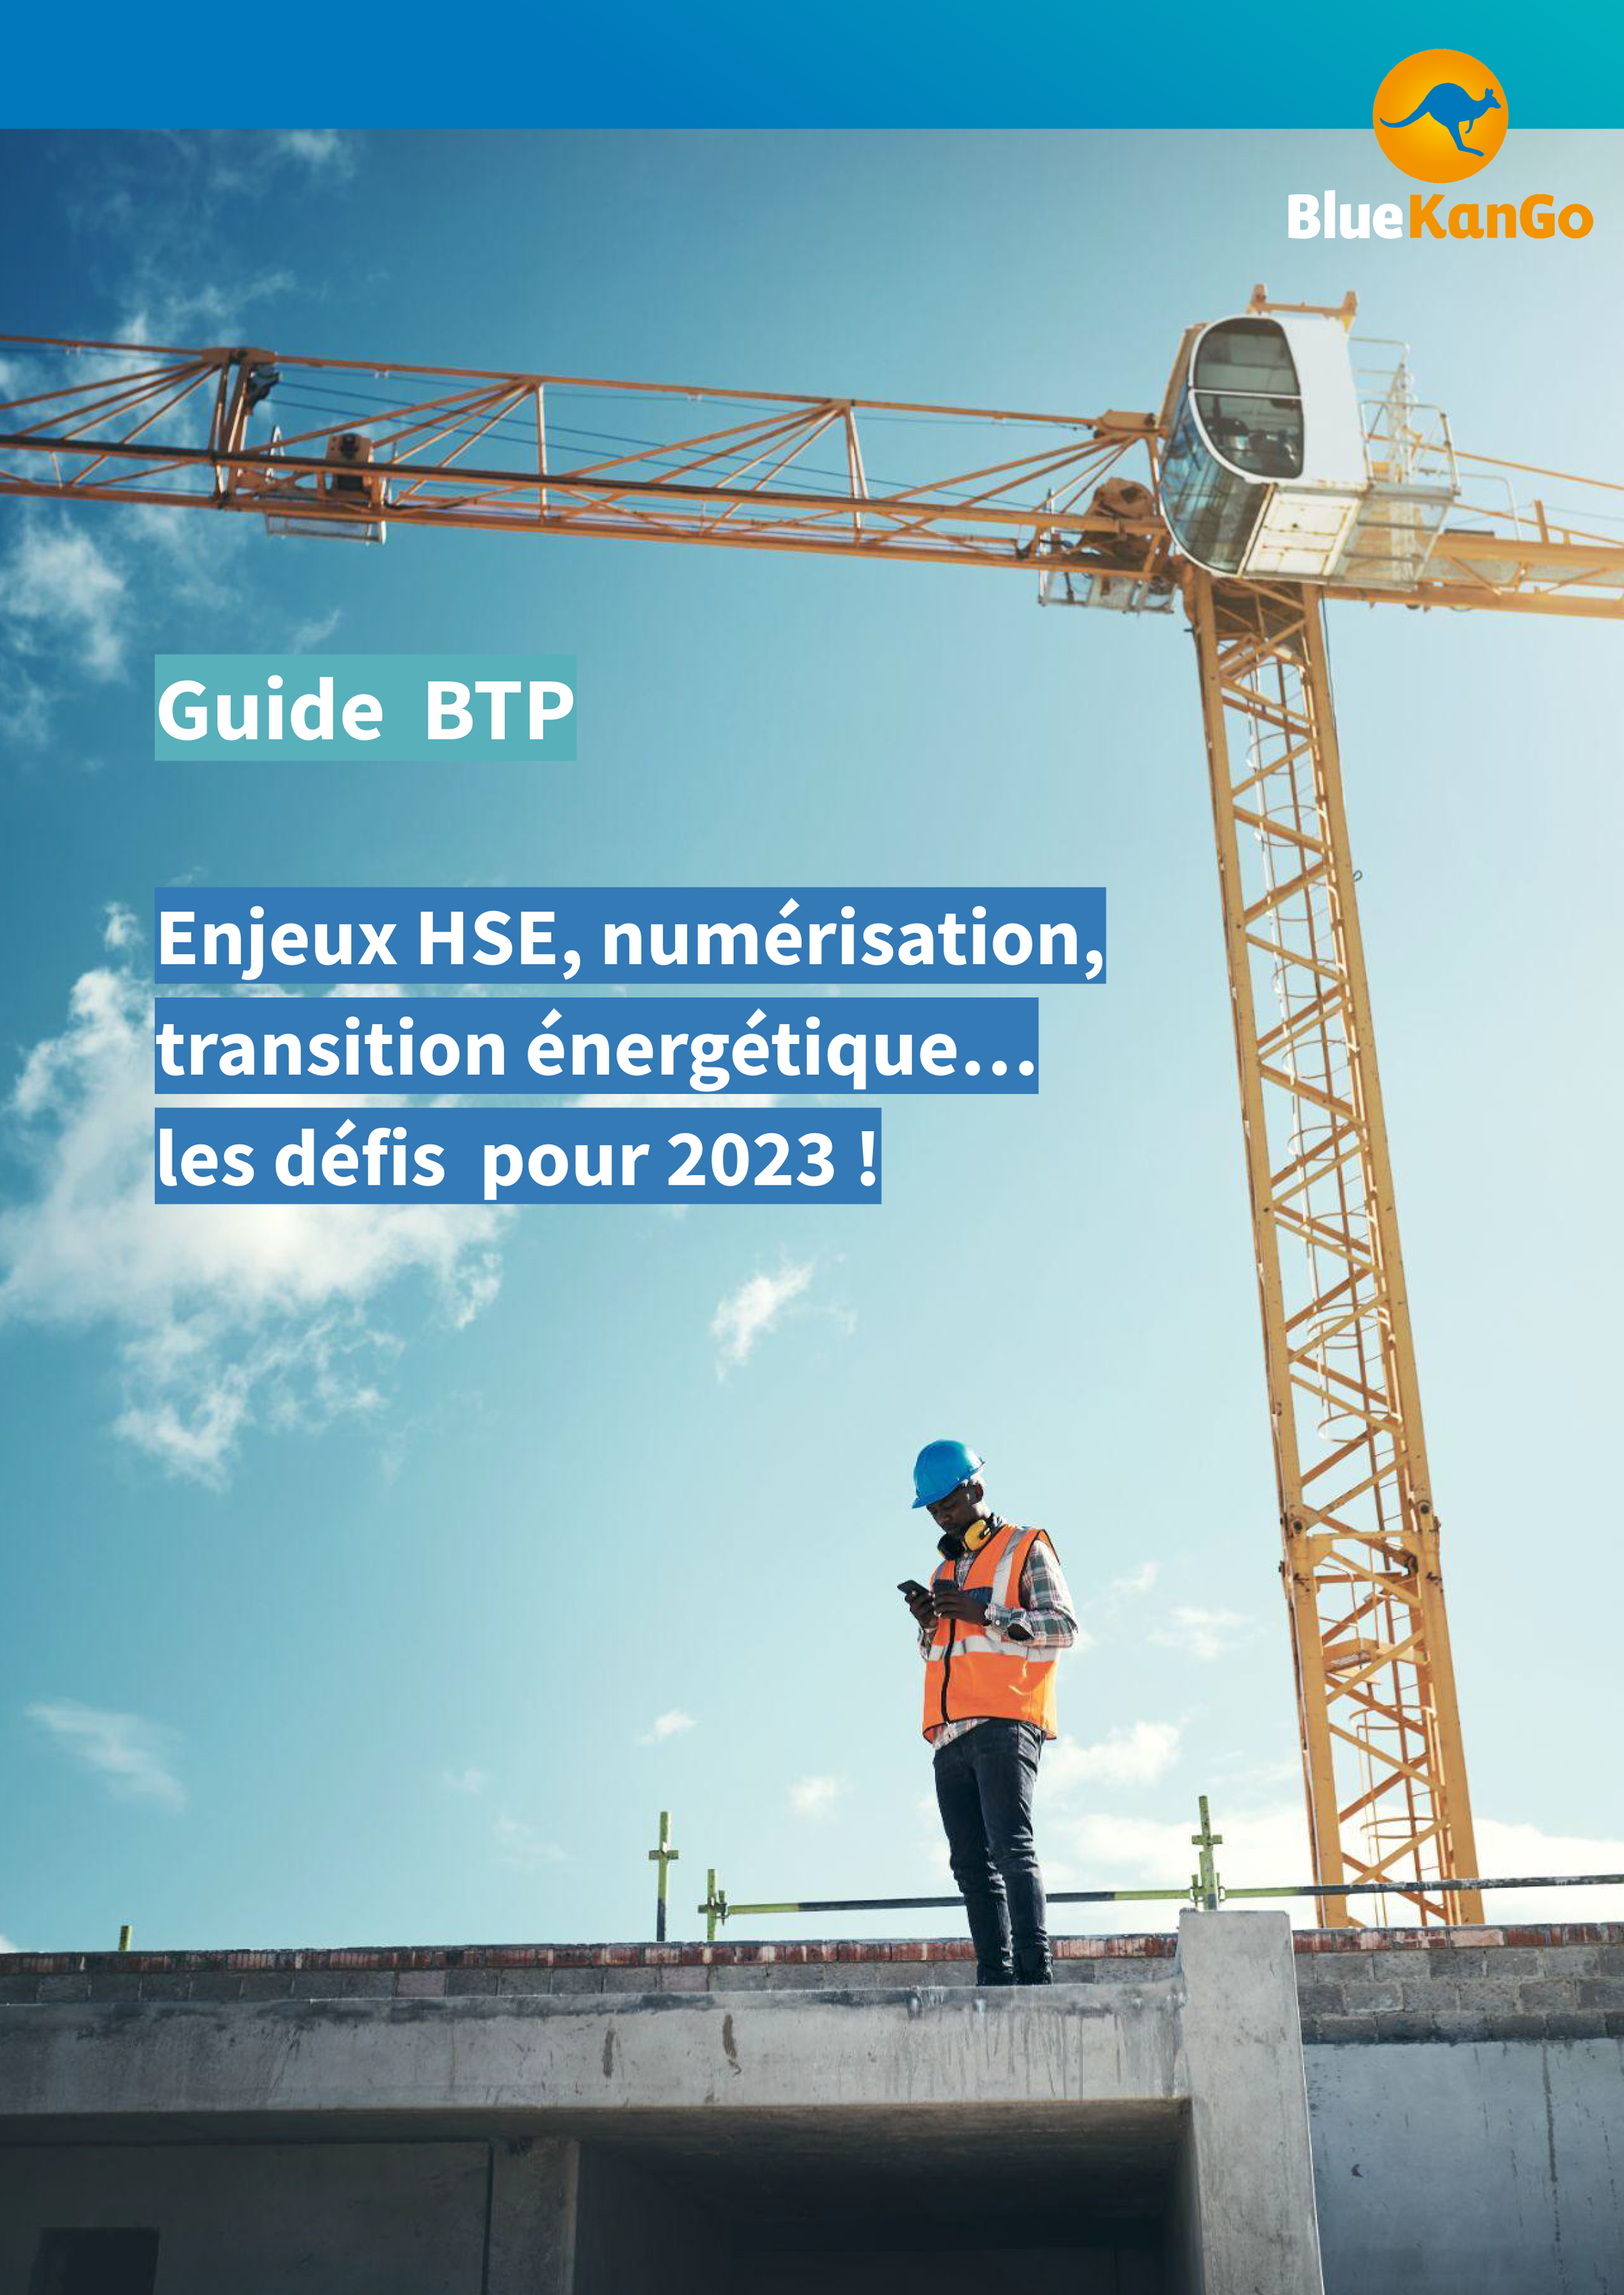 Guide BTP 2022-1